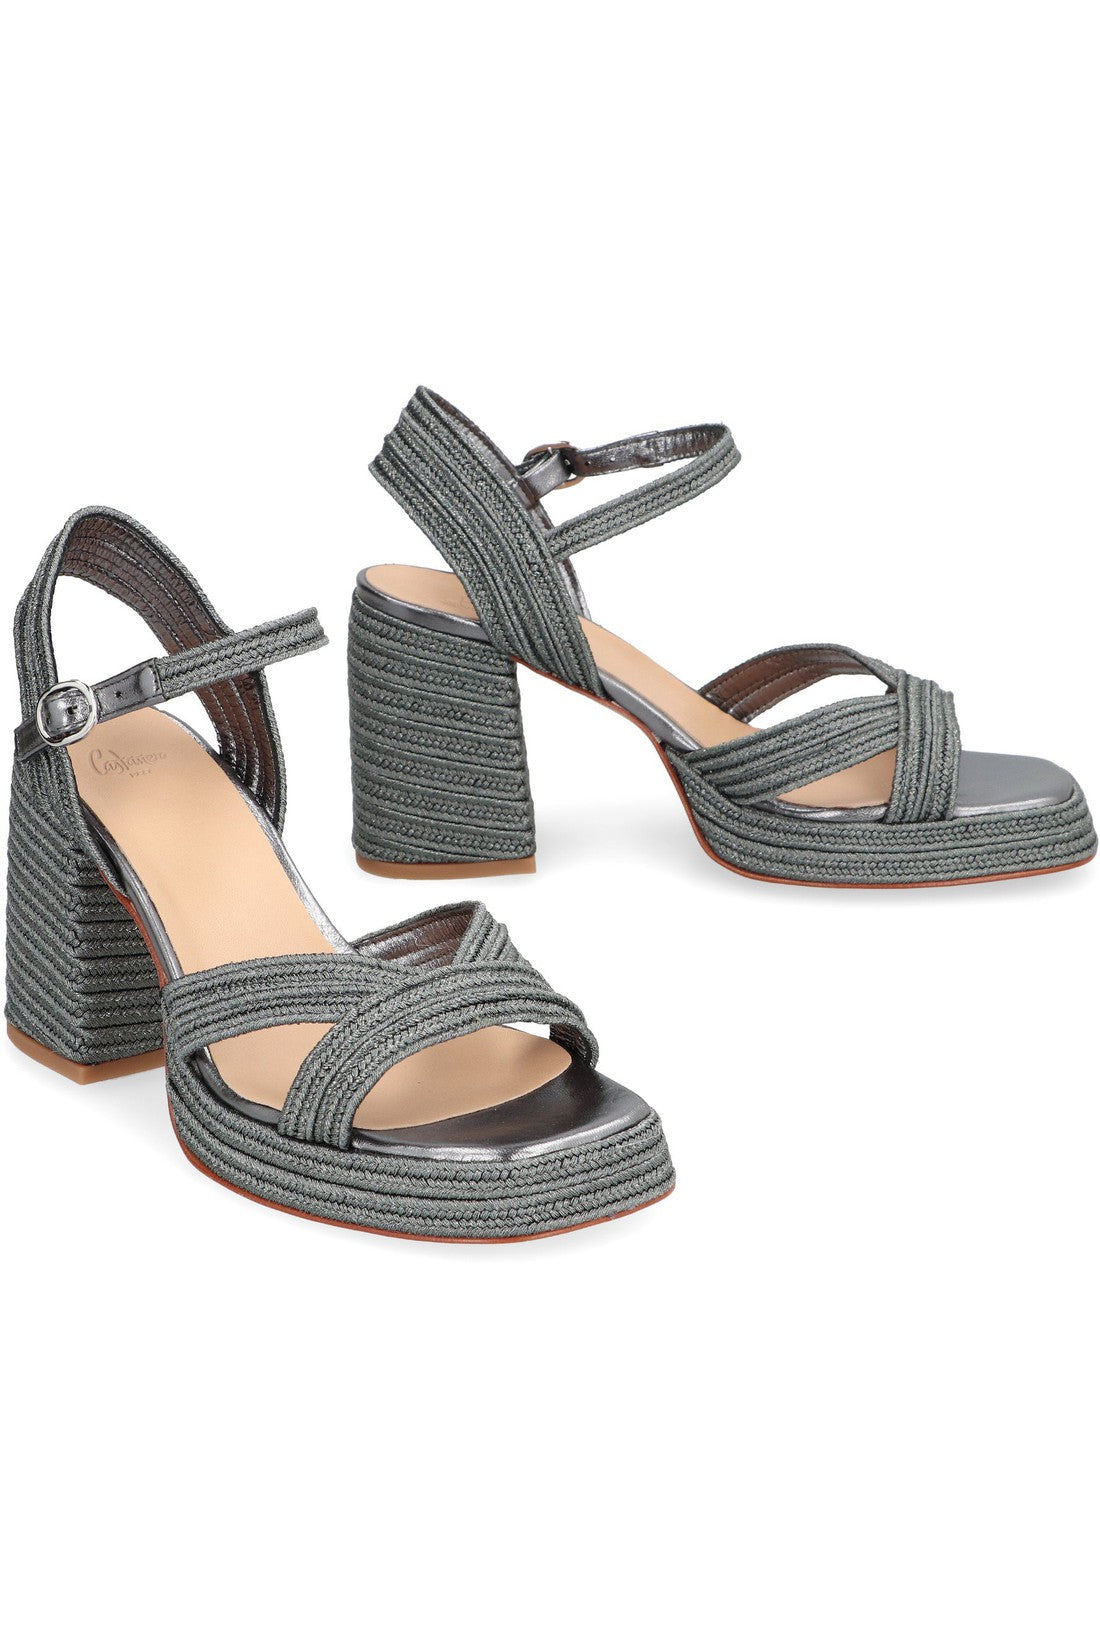 Castaner-OUTLET-SALE-Valle heeled sandals-ARCHIVIST